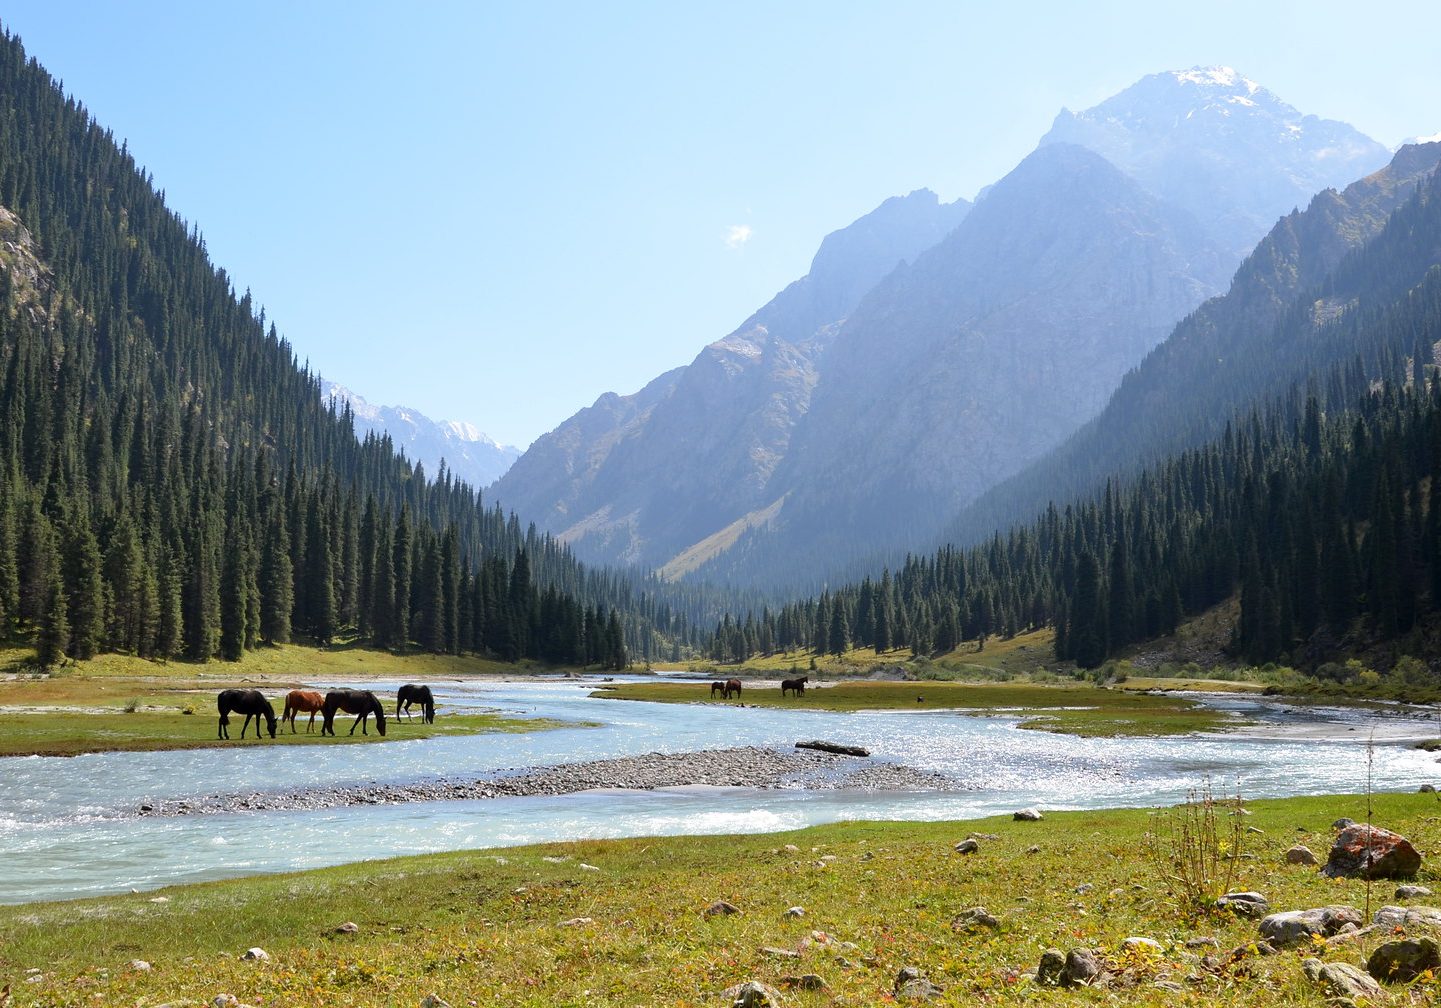 Kyrgyzstan, The Karakol Valley